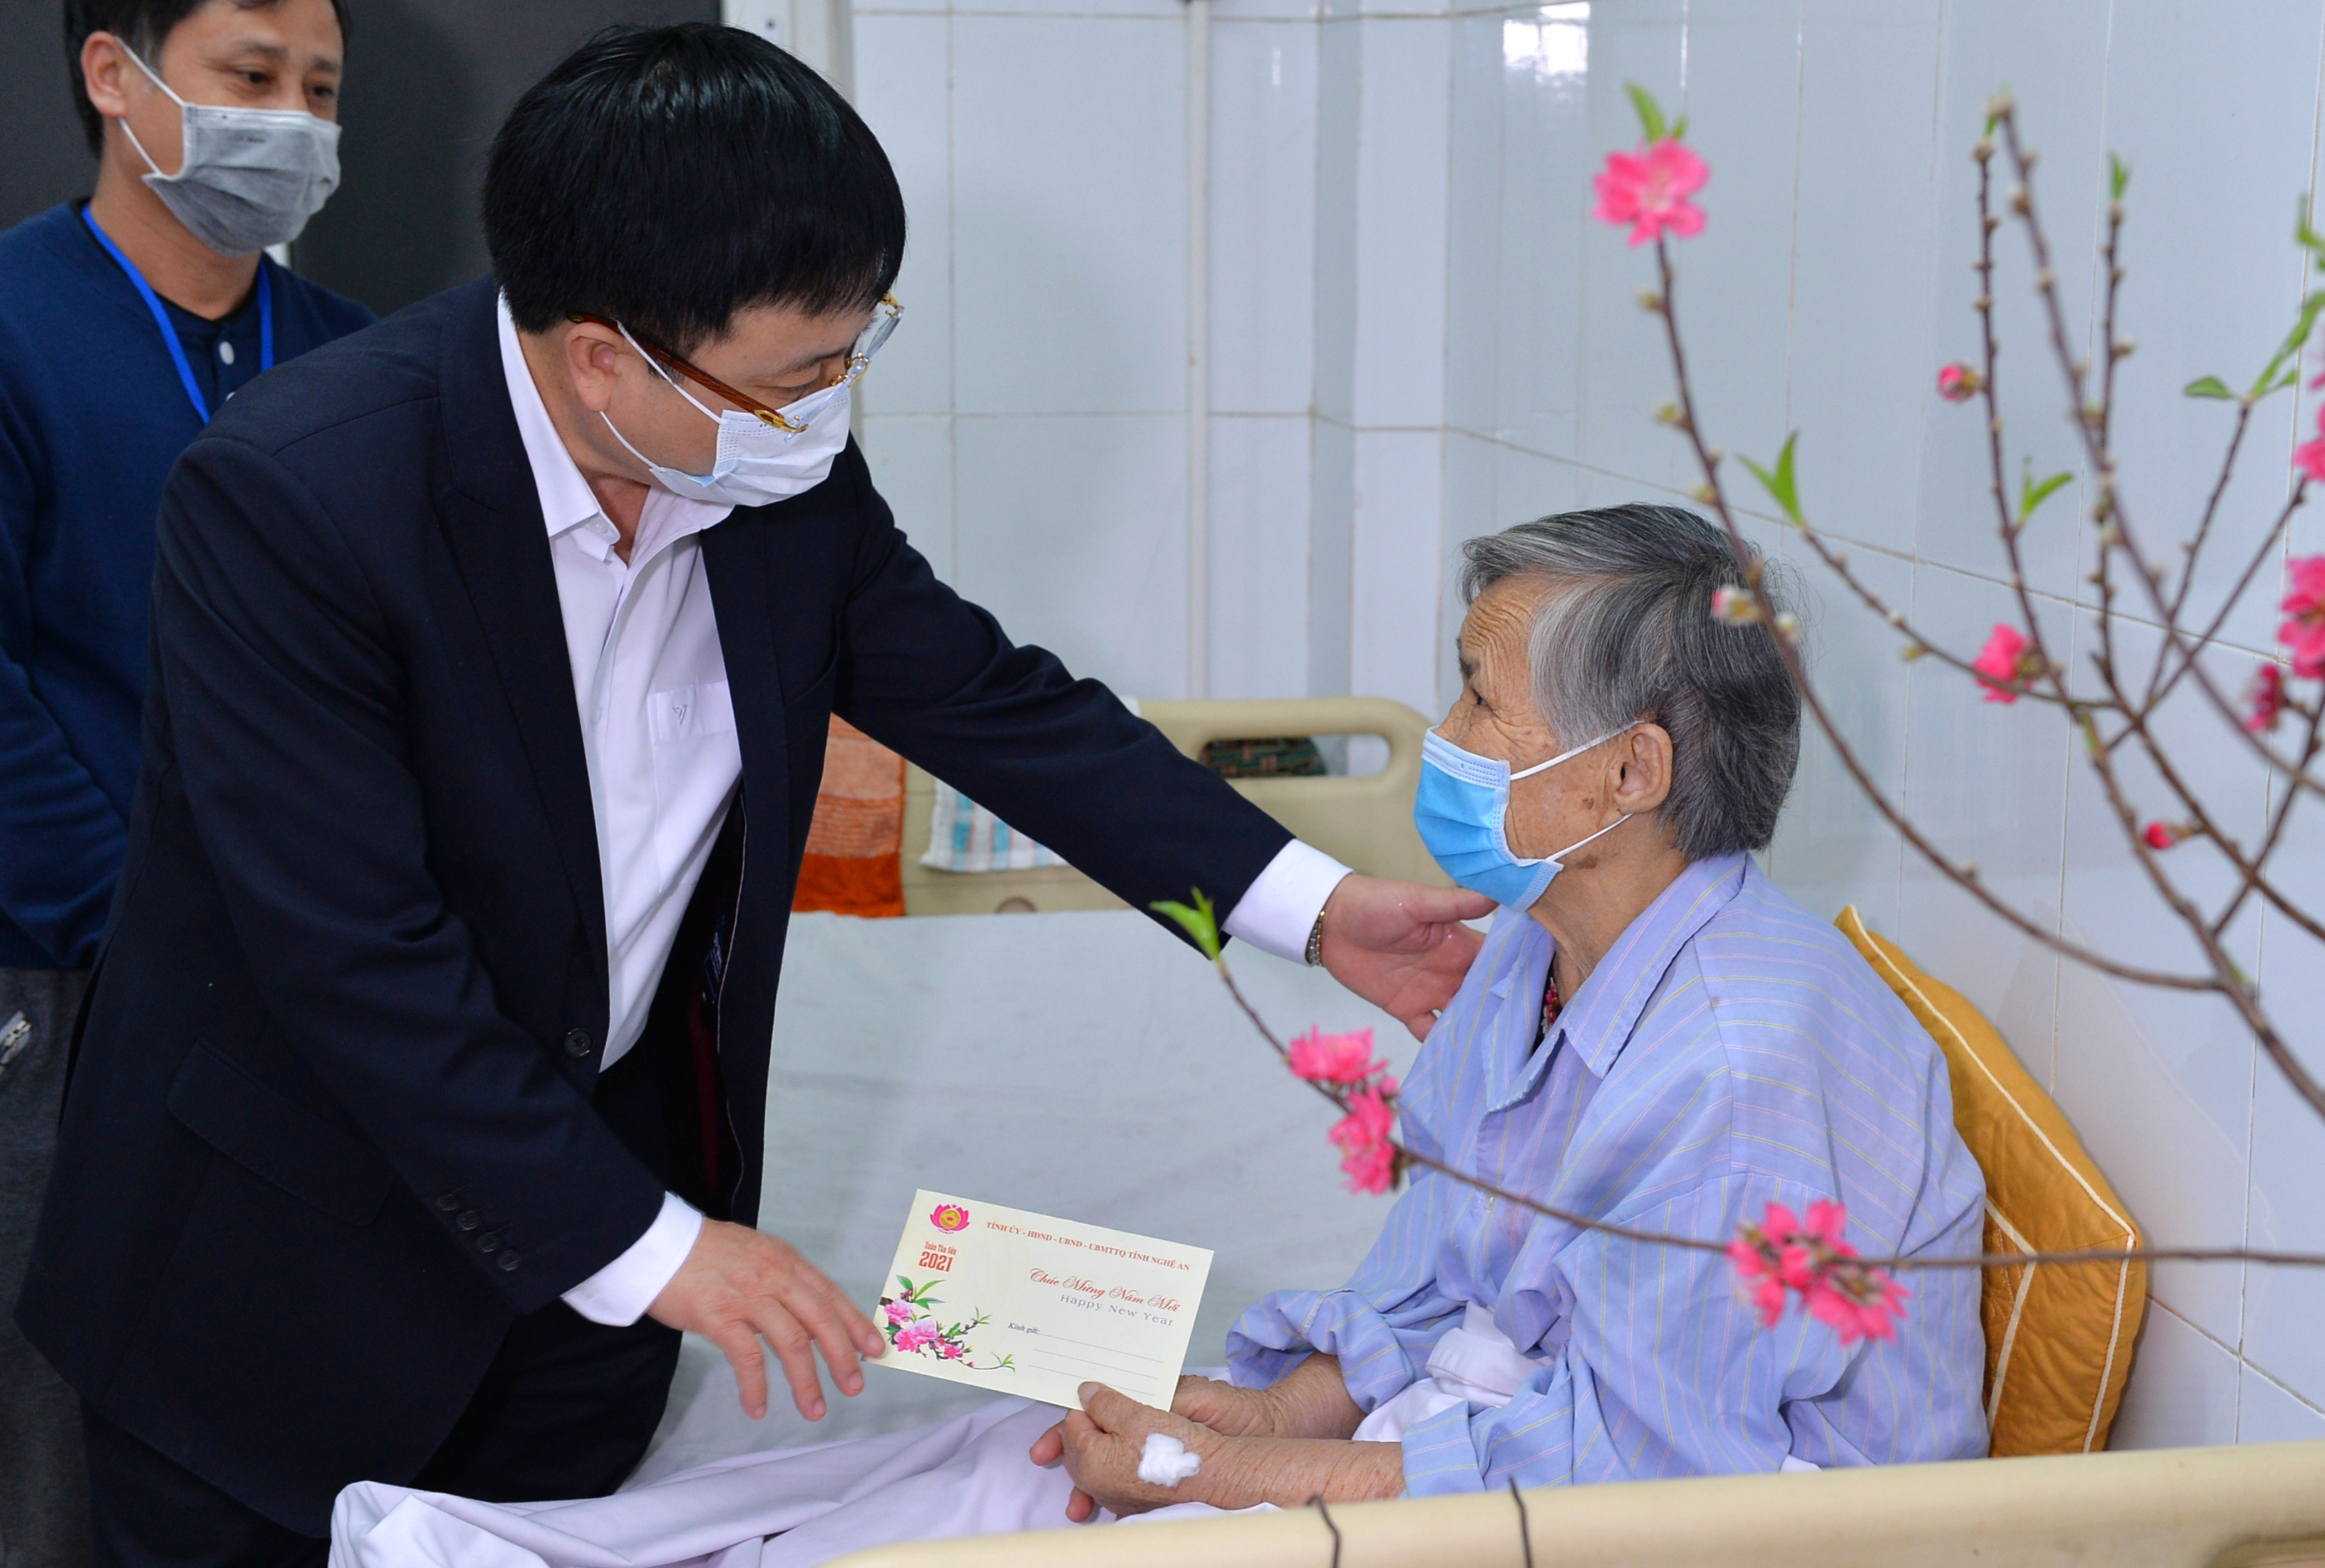 Đồng chí Bùi Đình Long - Phó Chủ tịch UBND tặng quà động các bệnh nhân khó khăn đang điều trị tại bệnh viện. Ảnh: Thành Cường